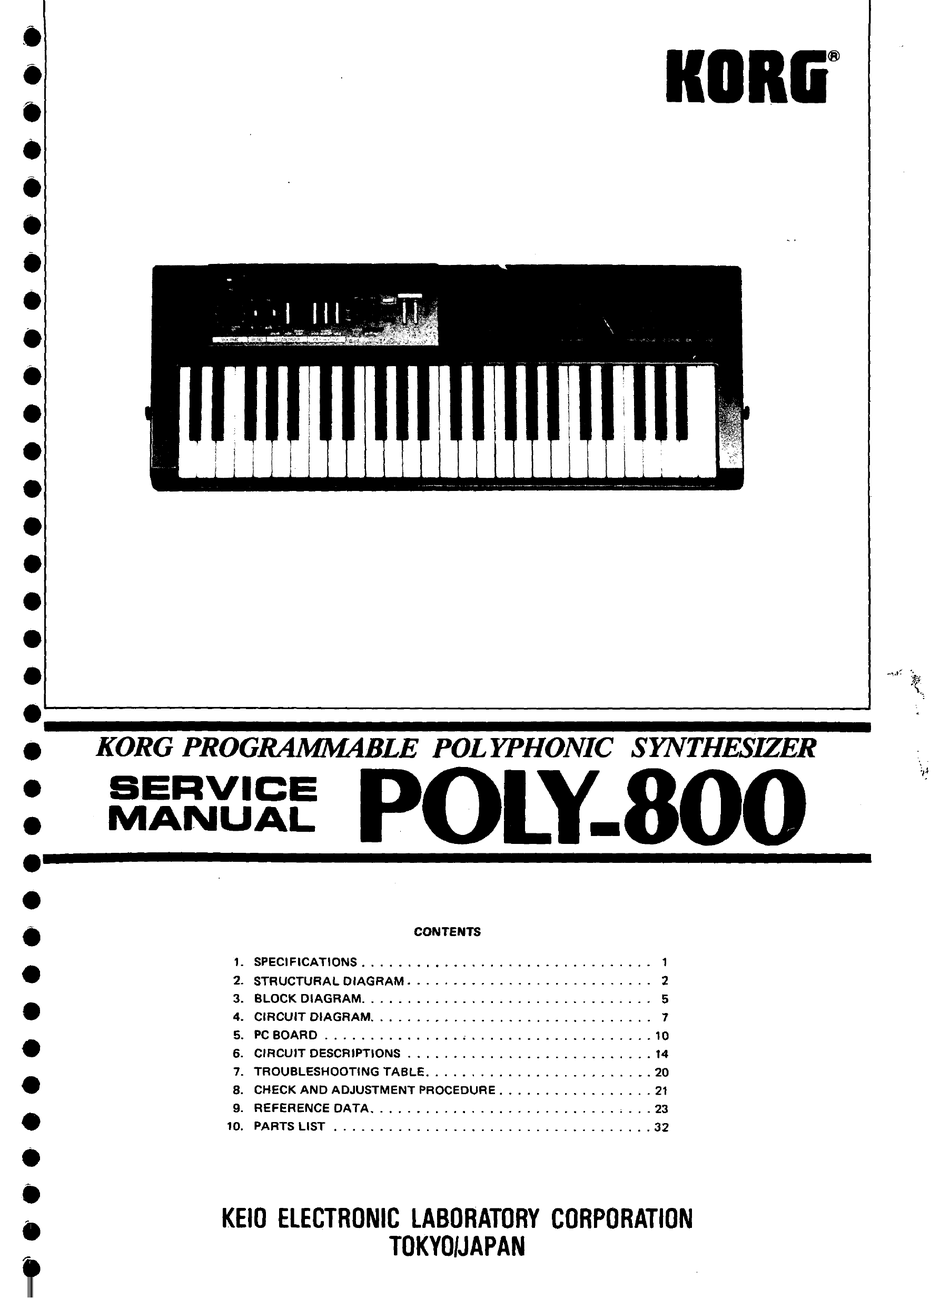 korg poly 800 manual pdf